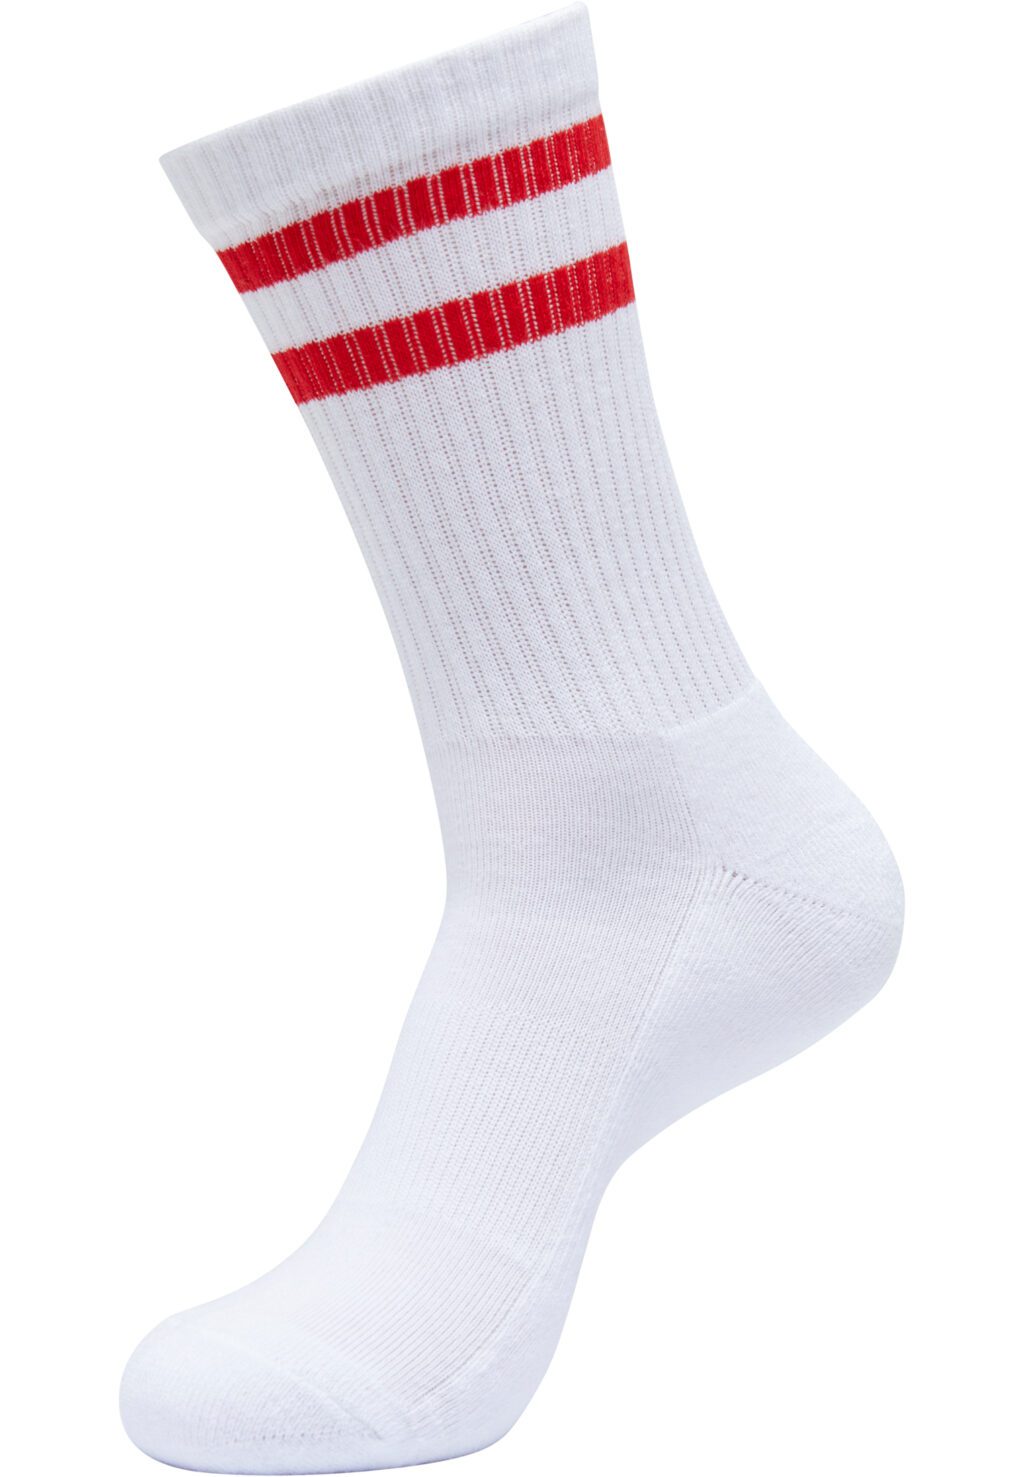 Double Stripe Socks 5-Pack white/cityred TB6801